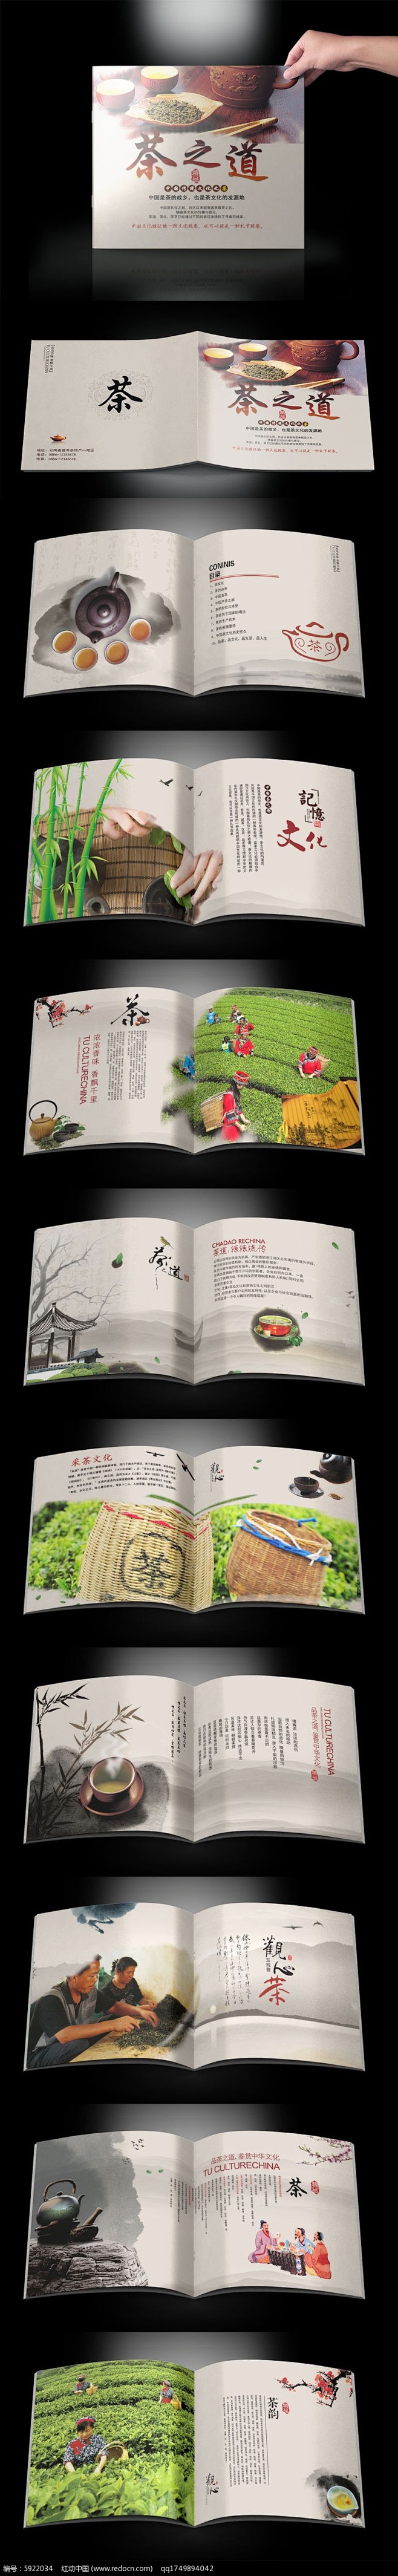 中国风茶之道画册设计PSD素材下载_产品...